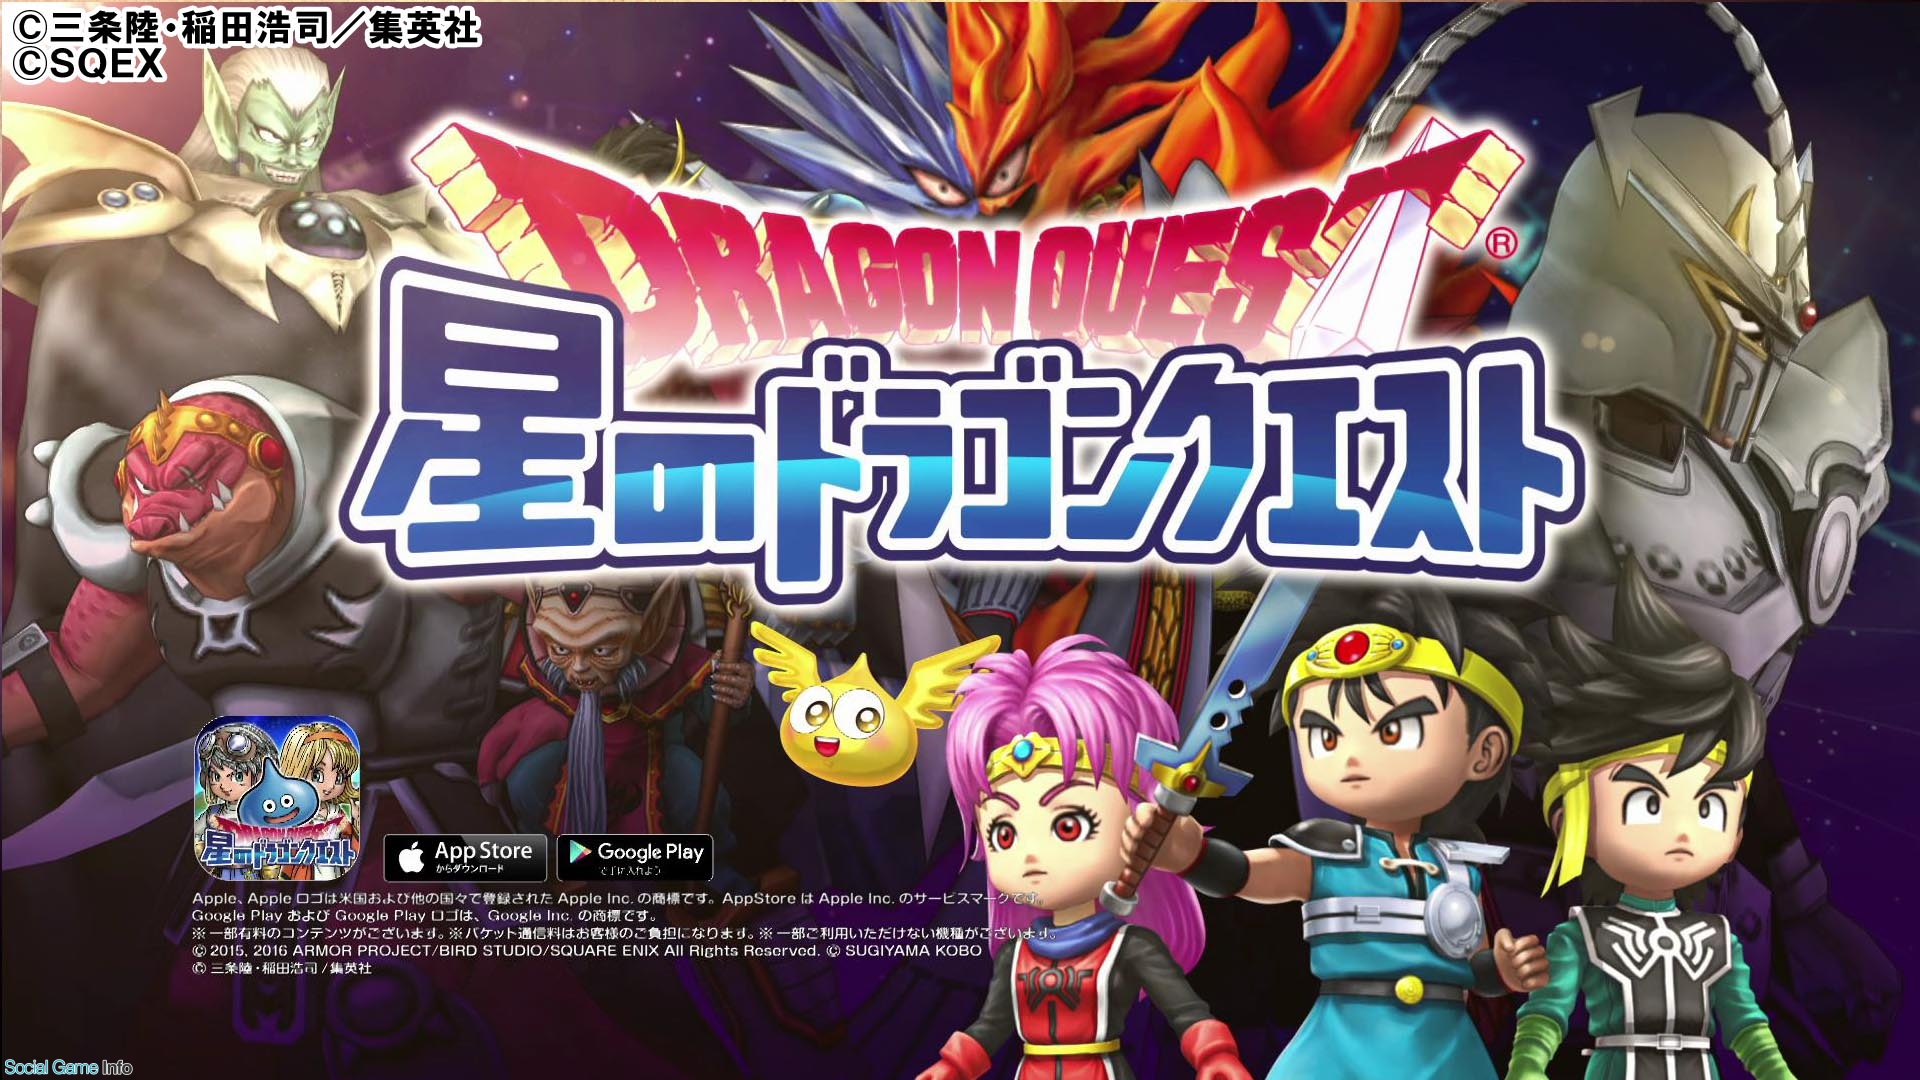 スクエニ 星のドラゴンクエスト で Dragon Quest ダイの大冒険 とのコラボイベントを題材にしたtvcmを放映 Social Game Info